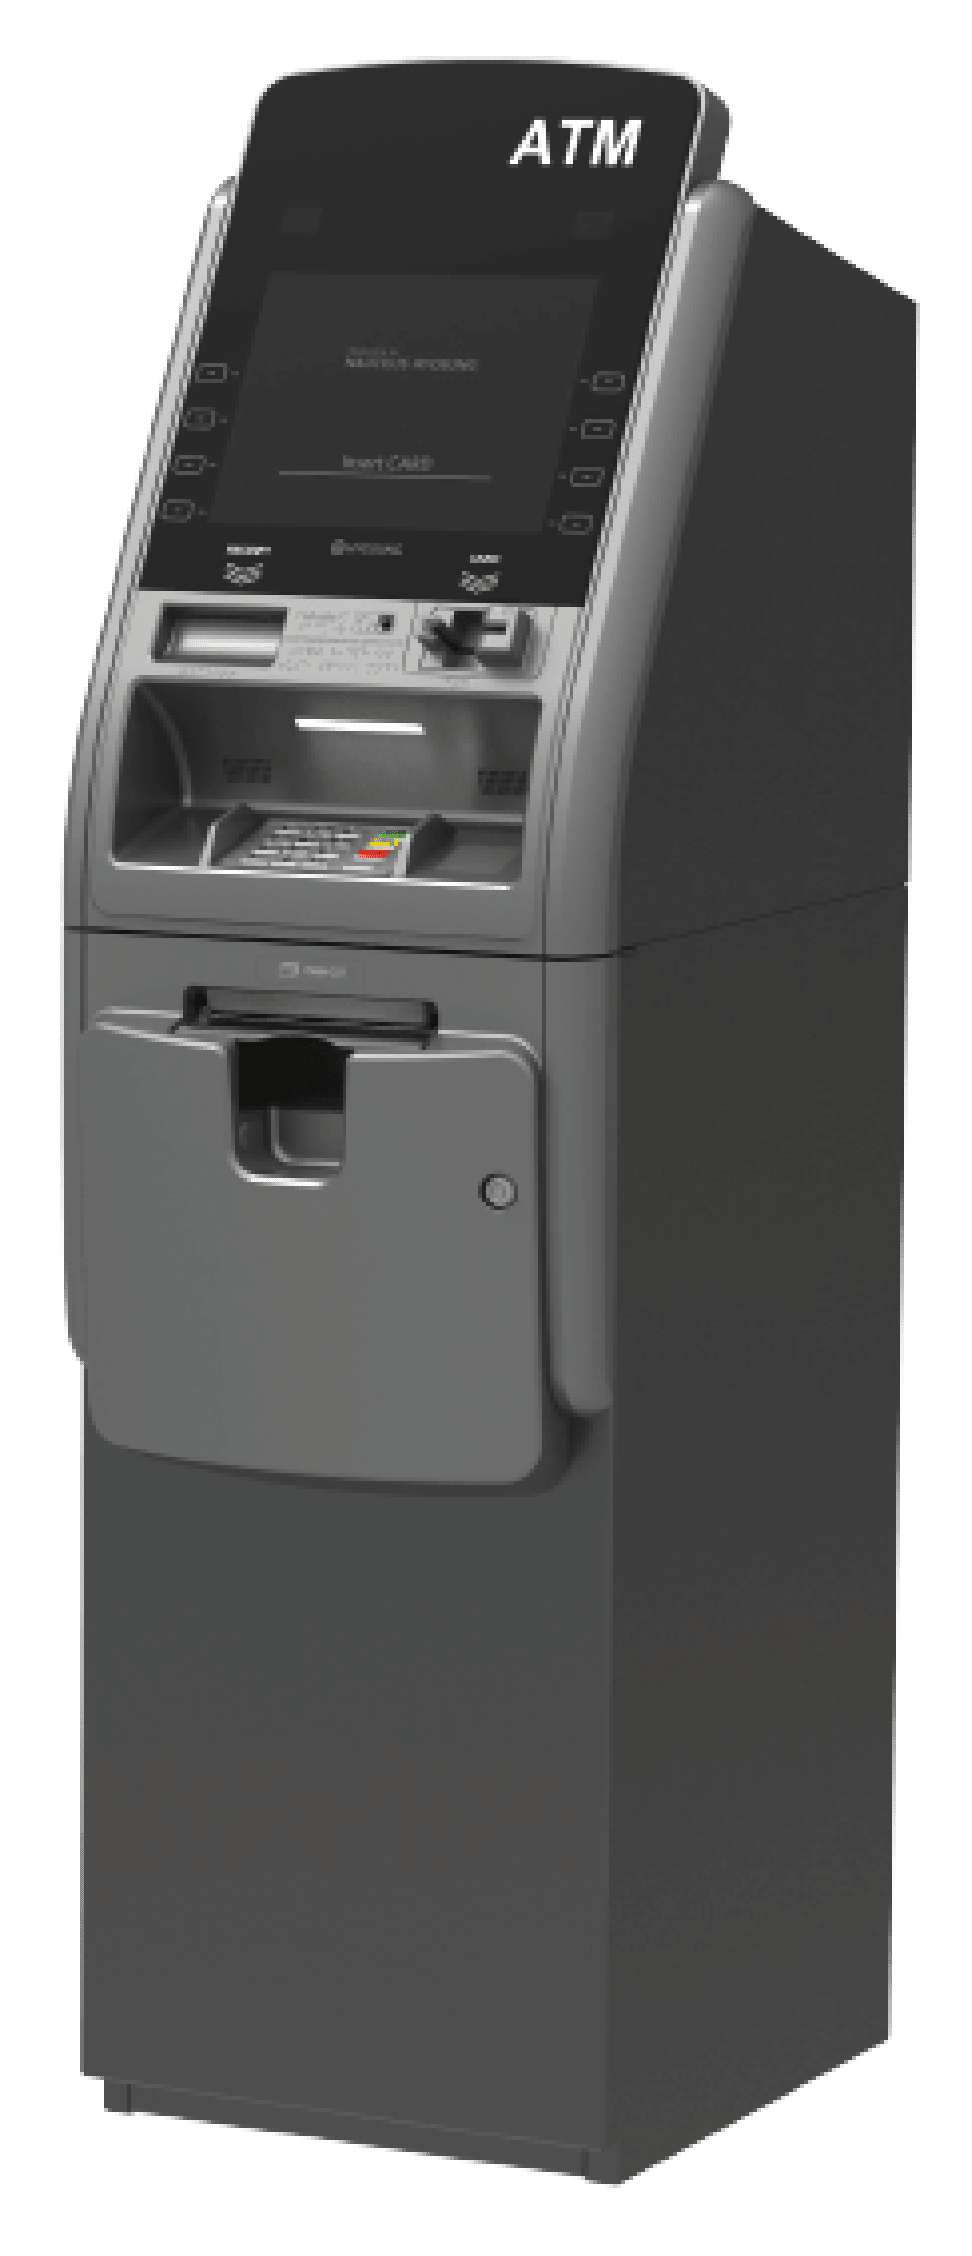 ATM Machines